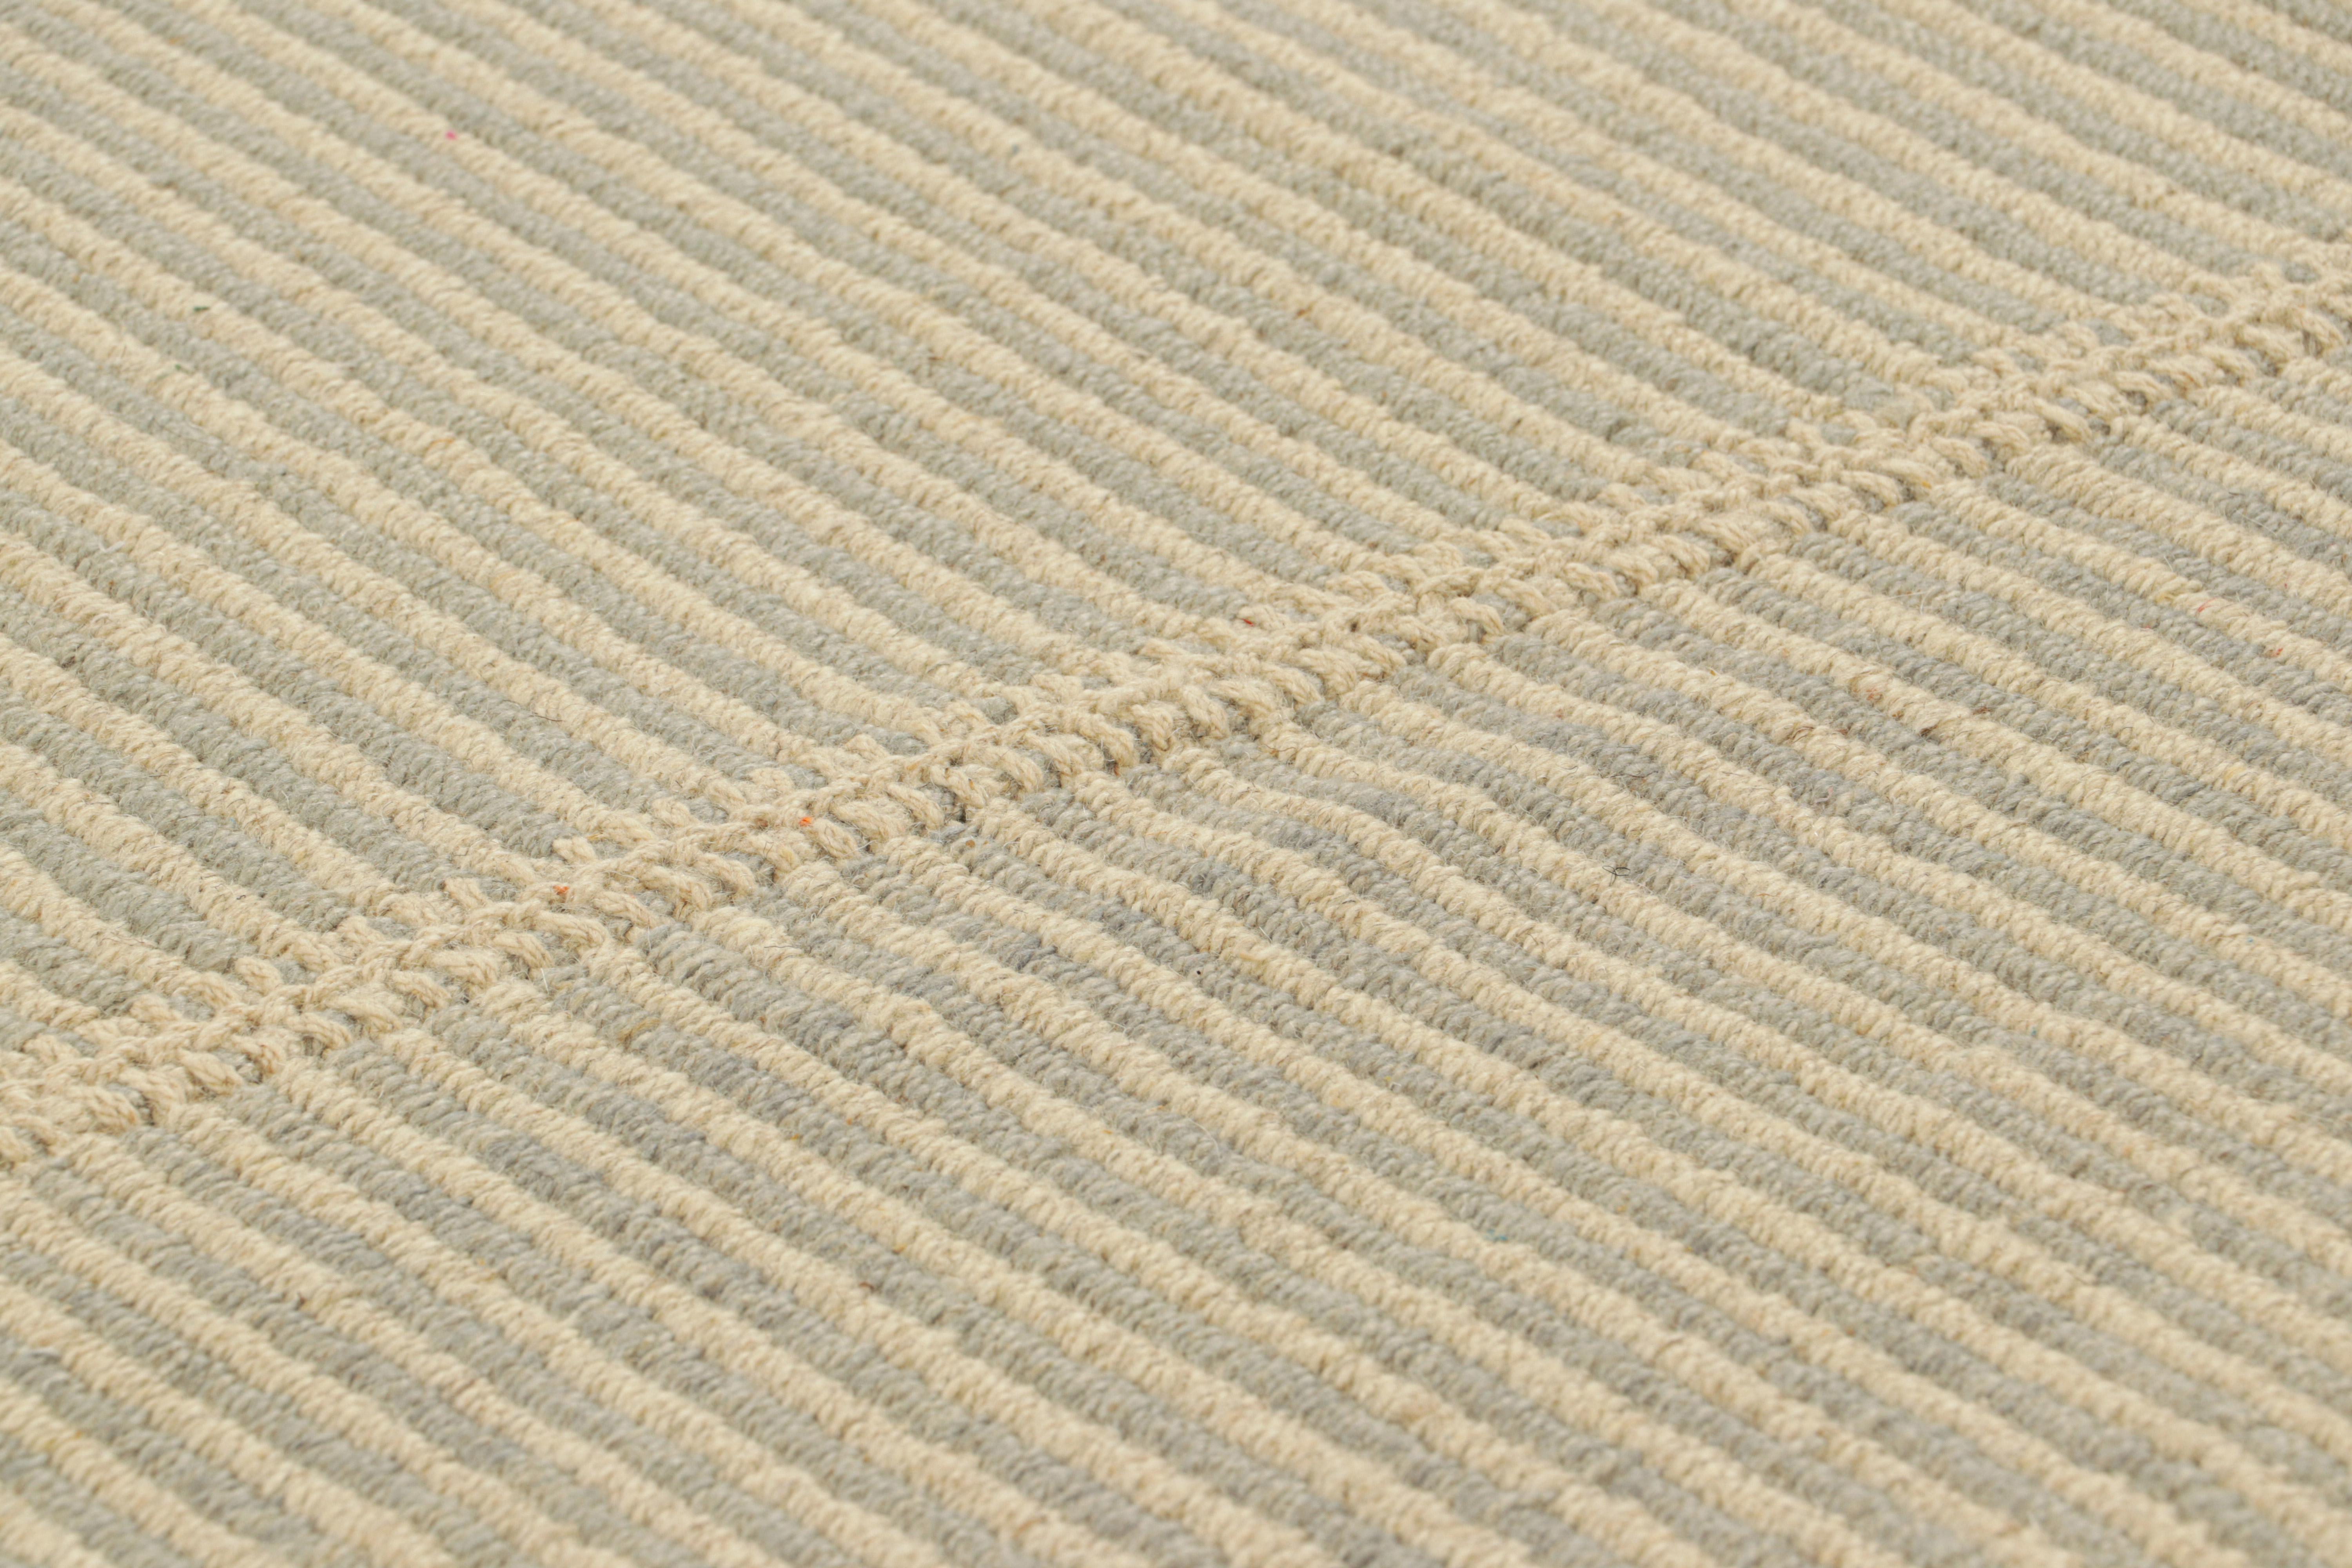 Tissé à la main en laine, un design Kilim 10x13 d'une nouvelle collection inventive de tissage plat contemporain de Rug & Kilim.

Sur le Design : 

Surnommée 